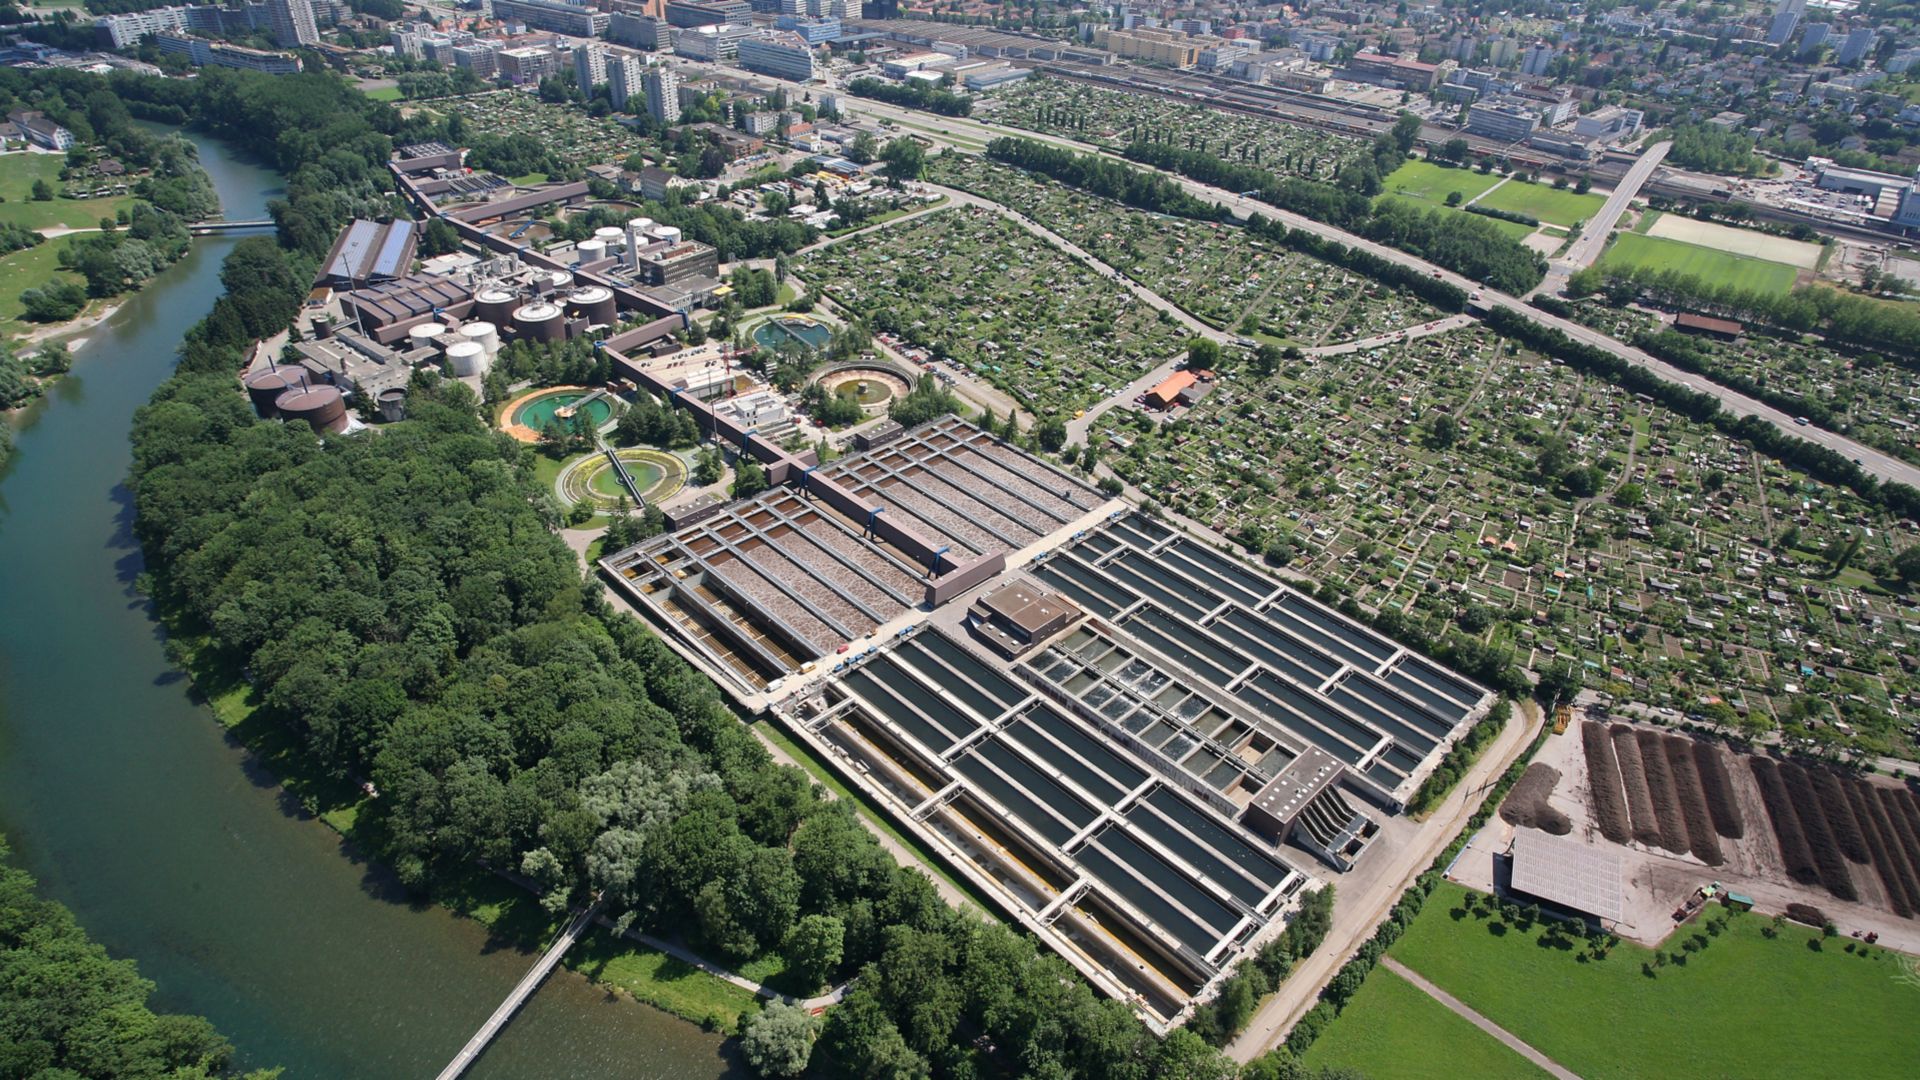 Waste water treatmant plant in Zurich, Switzerland